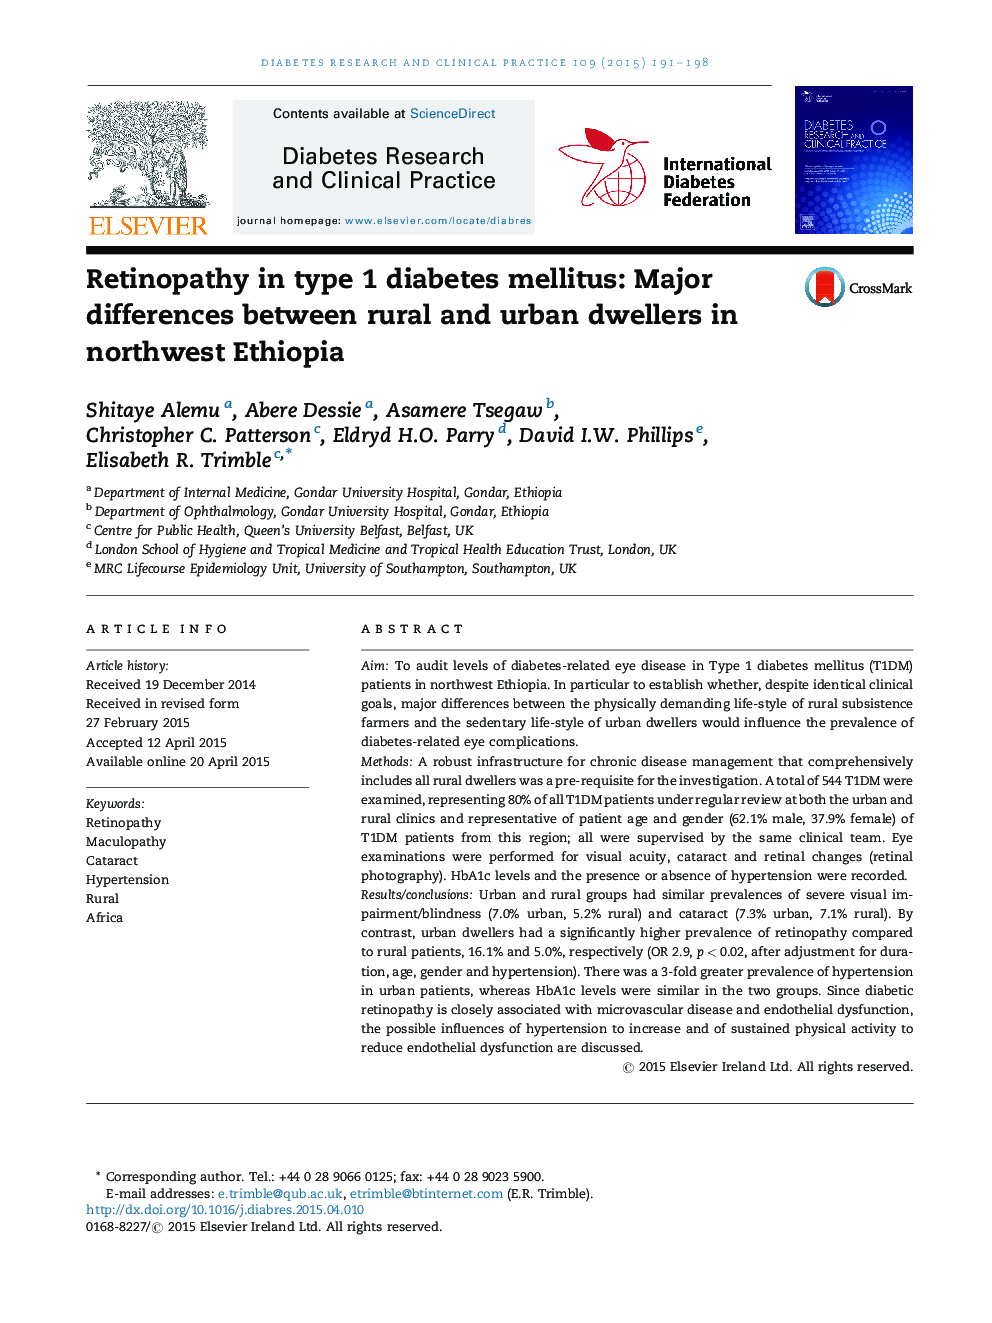 رتینوپاتی در دیابت نوع 1: تفاوت های عمده میان ساکنان روستایی و شهری در شمال غربی اتیوپی 